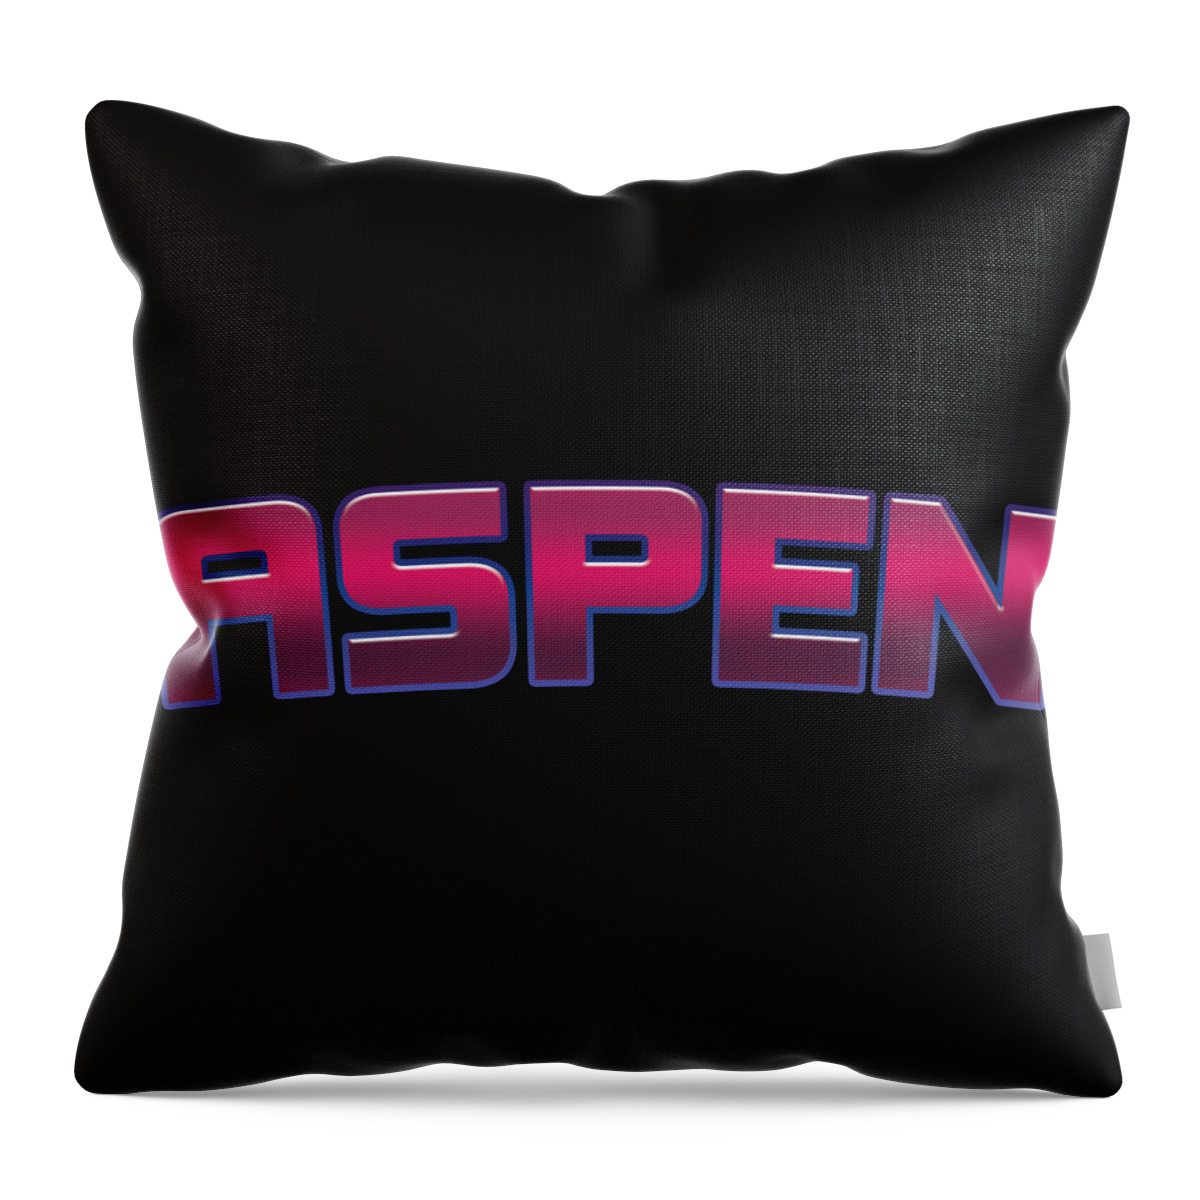 Aspen Throw Pillow featuring the digital art Aspen by TintoDesigns